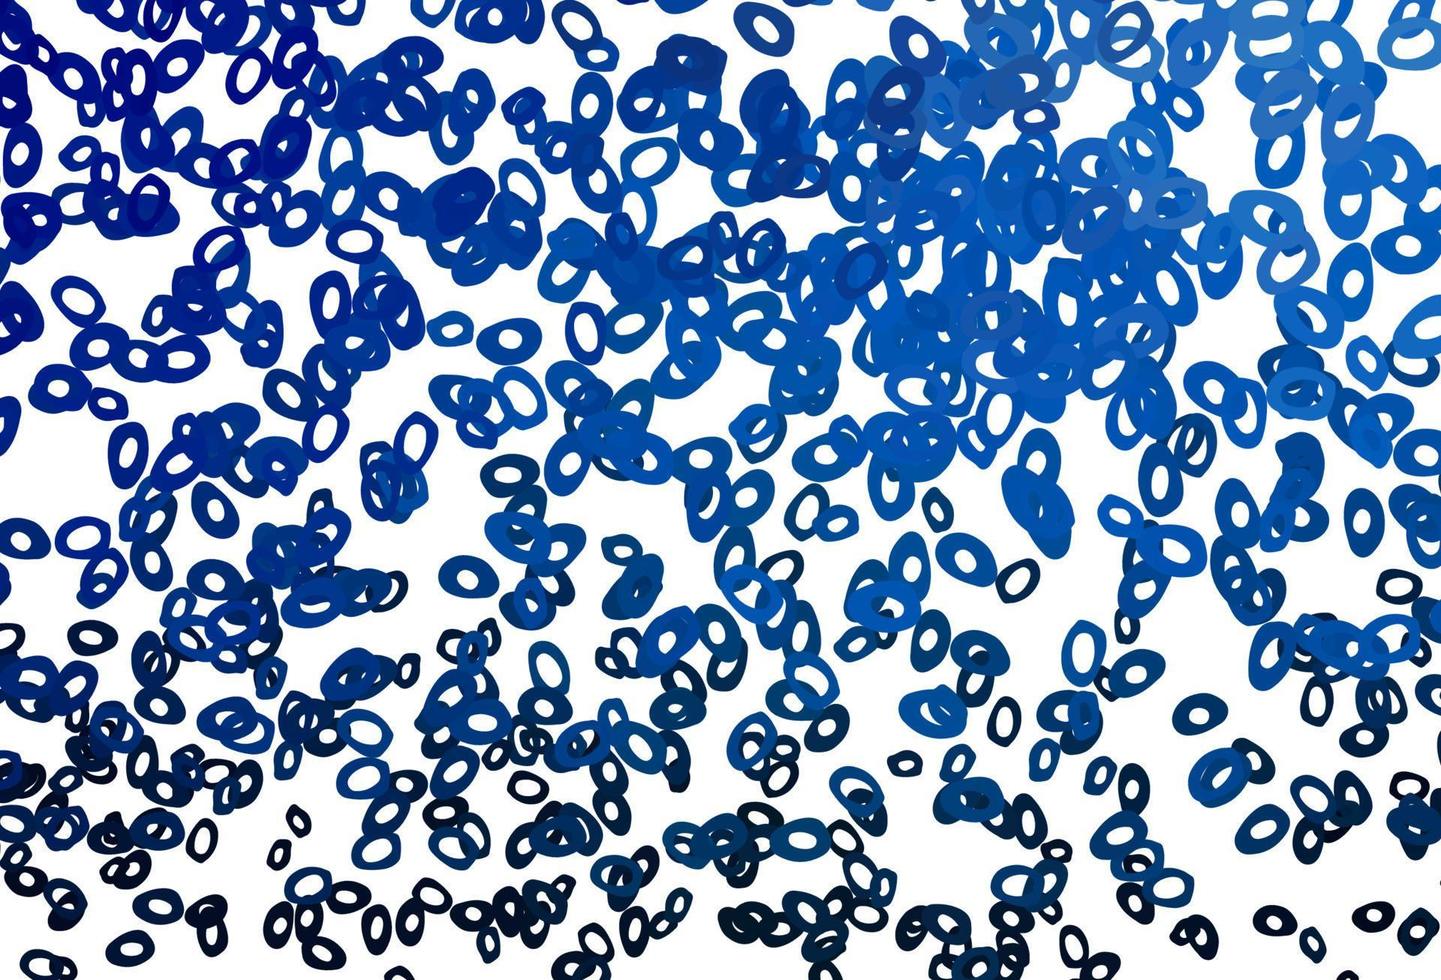 Fondo de vector azul oscuro con burbujas.